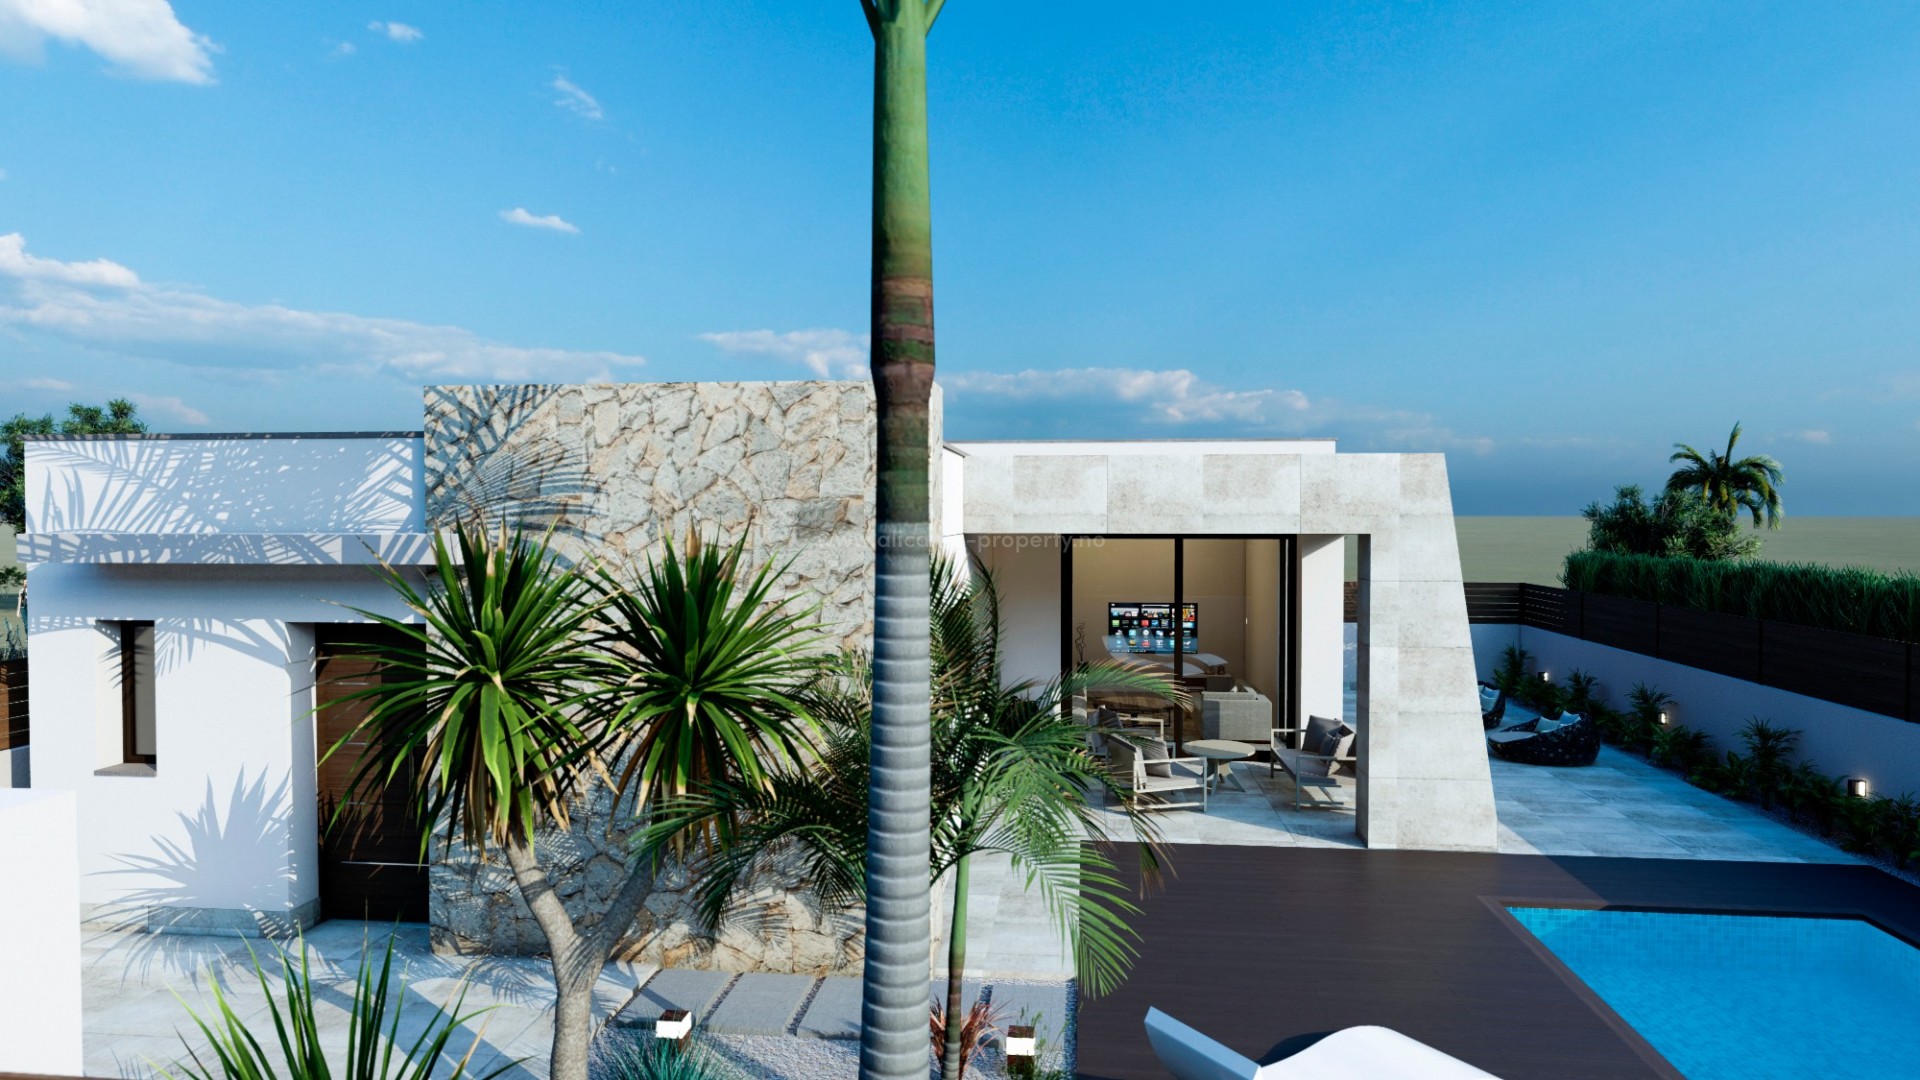 Villa /hus i Benijofar, 3 doble soverom, 2 komplette bad, solarium, privat pool, 10 min til vakker strand i Guardamar, egen grillplass. Tett på infrastruktur